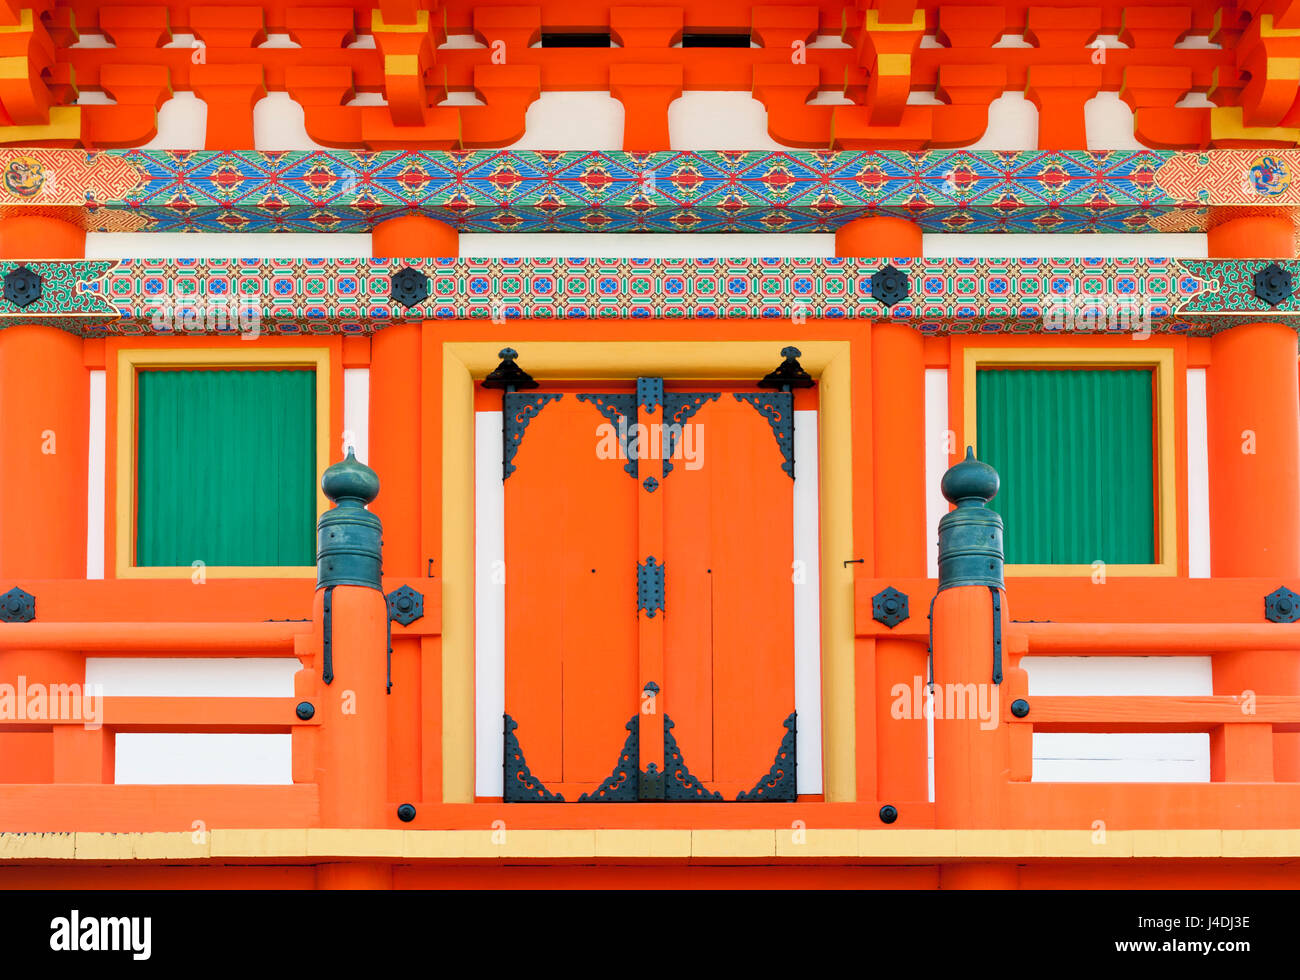 Chiudere i dettagli dell'architettura giapponese su porte e finestre di un edificio nel tempio Shintoista, Kyoto, Giappone Foto Stock